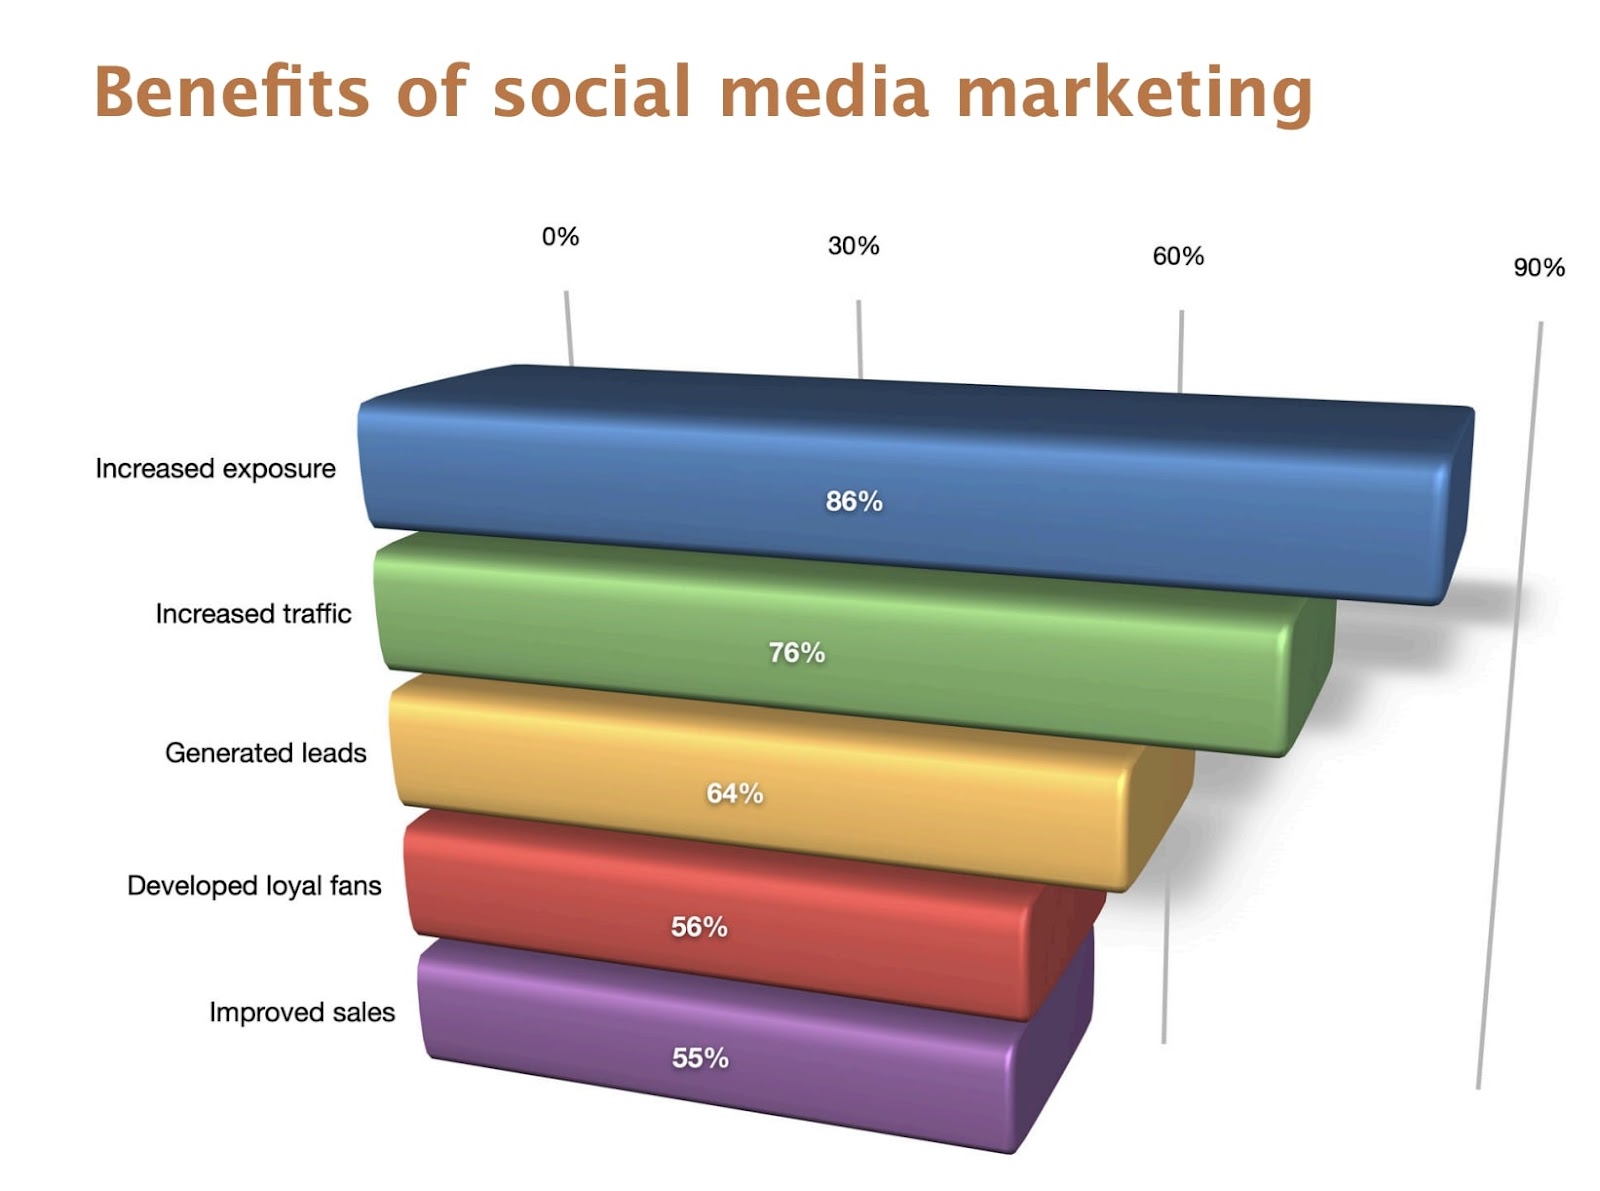 Beneficios del gráfico de barras de la encuesta de marketing en redes sociales para el tráfico de referencias